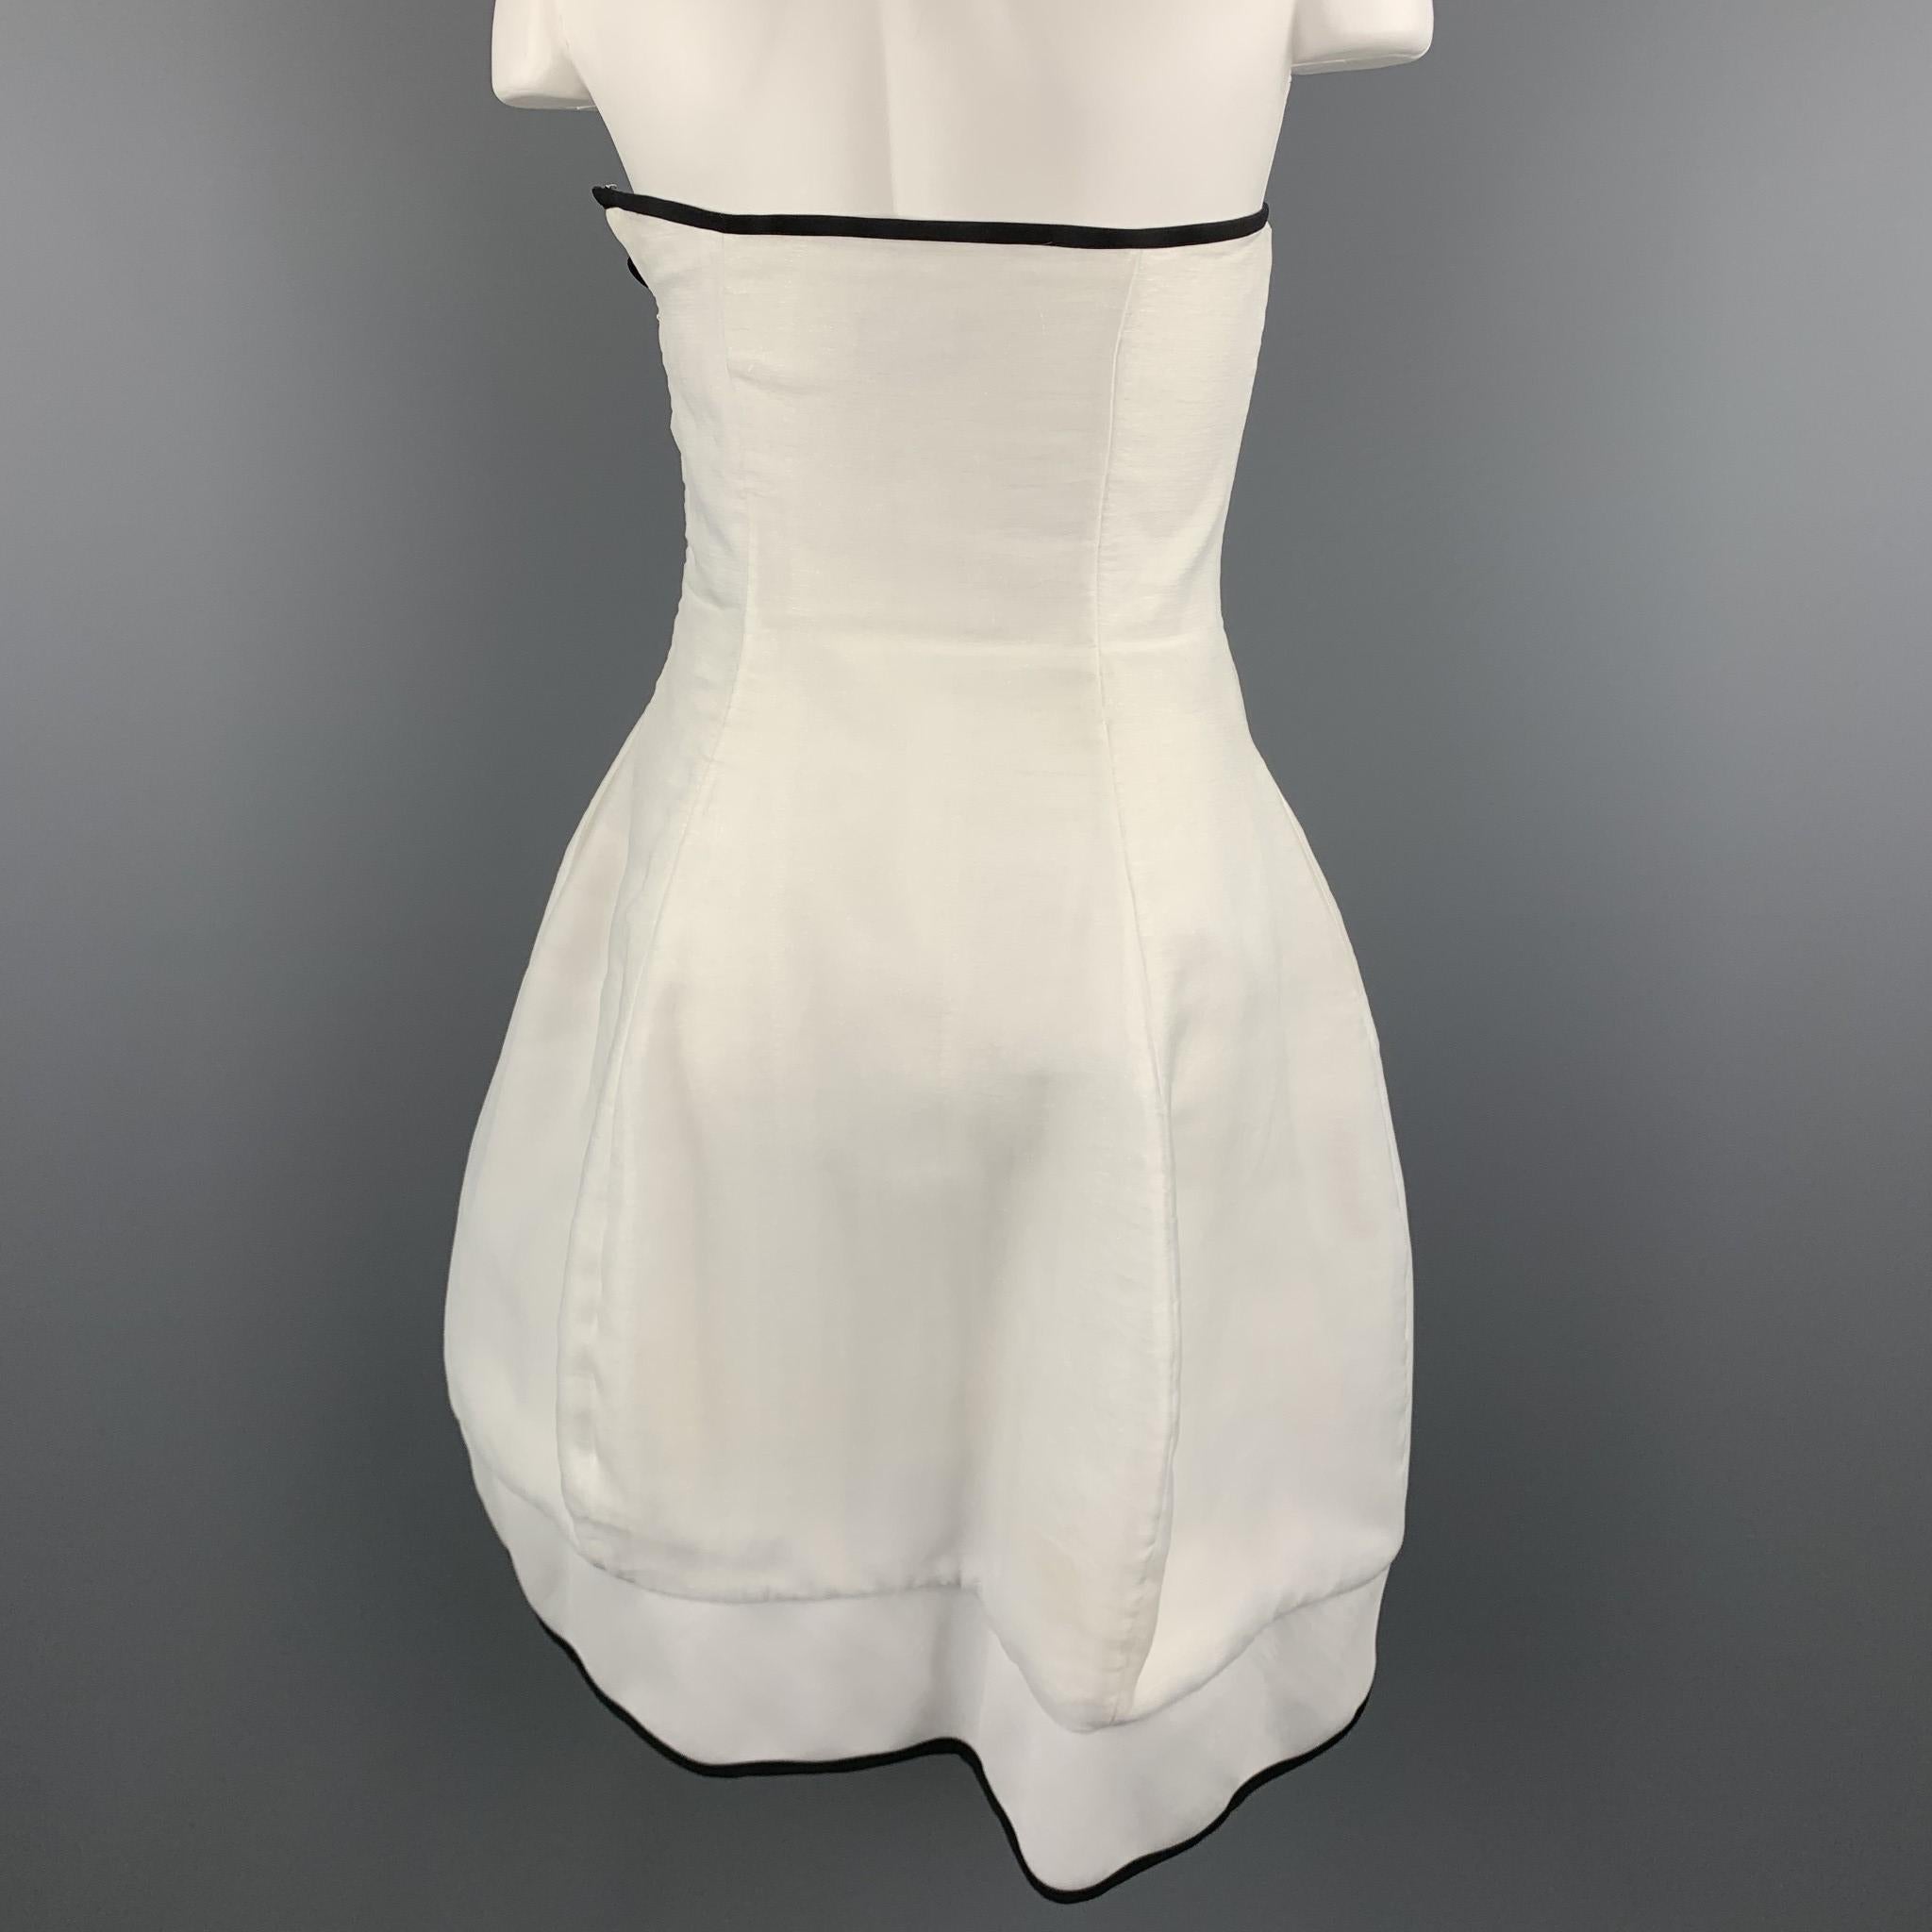 EMPORIO ARMANI Size 2 White Metallic Chiffon Strapless Cocktail Dress 1